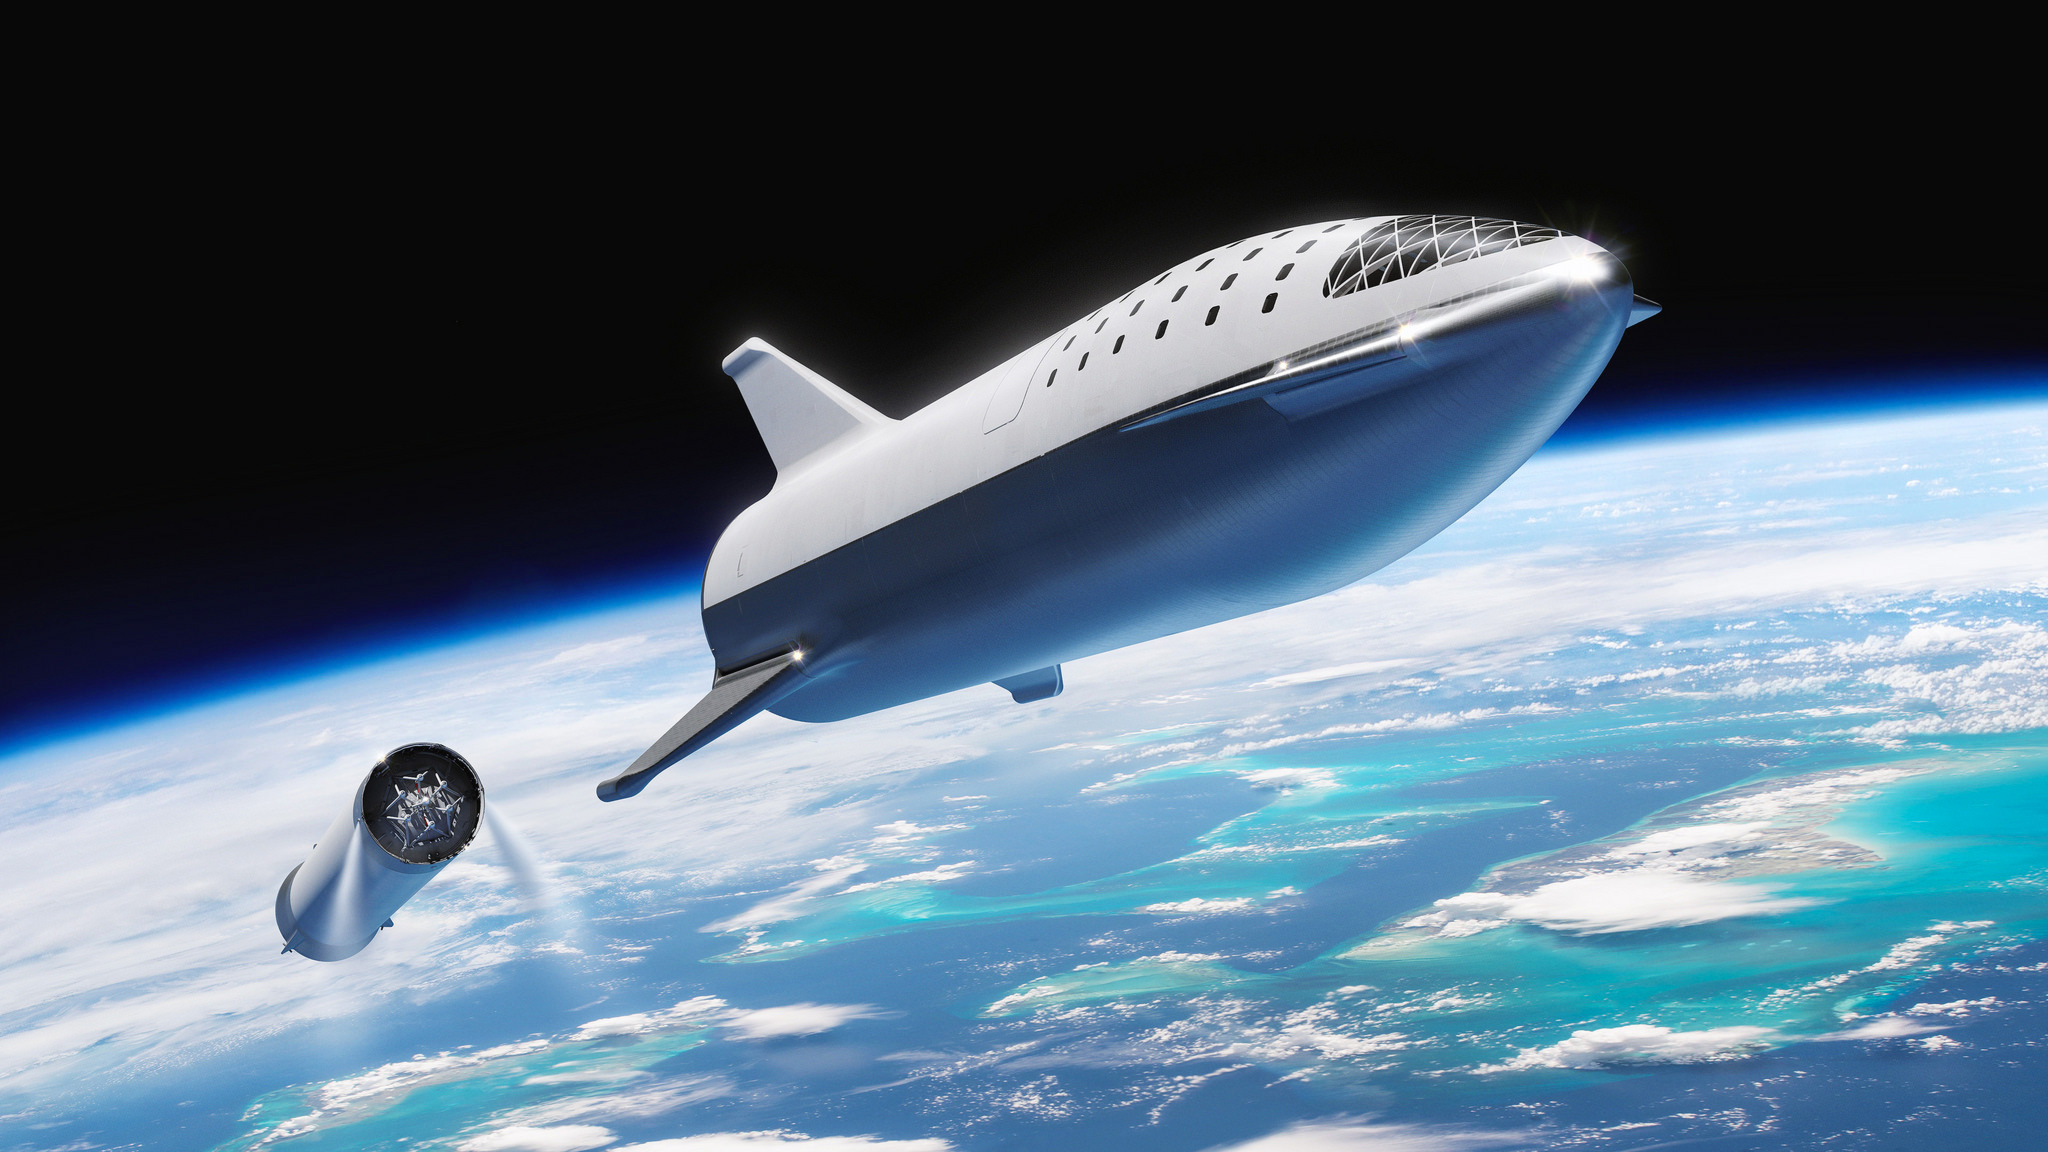 Le Super Heavy et le Starship de SpaceX. Le Starship devrait mesurer 55 mètres de haut pour un diamètre de 9 mètres et propulsé par 7 moteurs Raptor d'une poussée de 11,9 méganewtons. Pour Super Heavy (l'étage principal), il aurait un même diamètre pour une hauteur de 63 mètres et propulsé par 31 moteurs Raptor. Ensemble, ces moteurs généreront une poussée au décollage de 52,7 méganewtons. © SpaceX